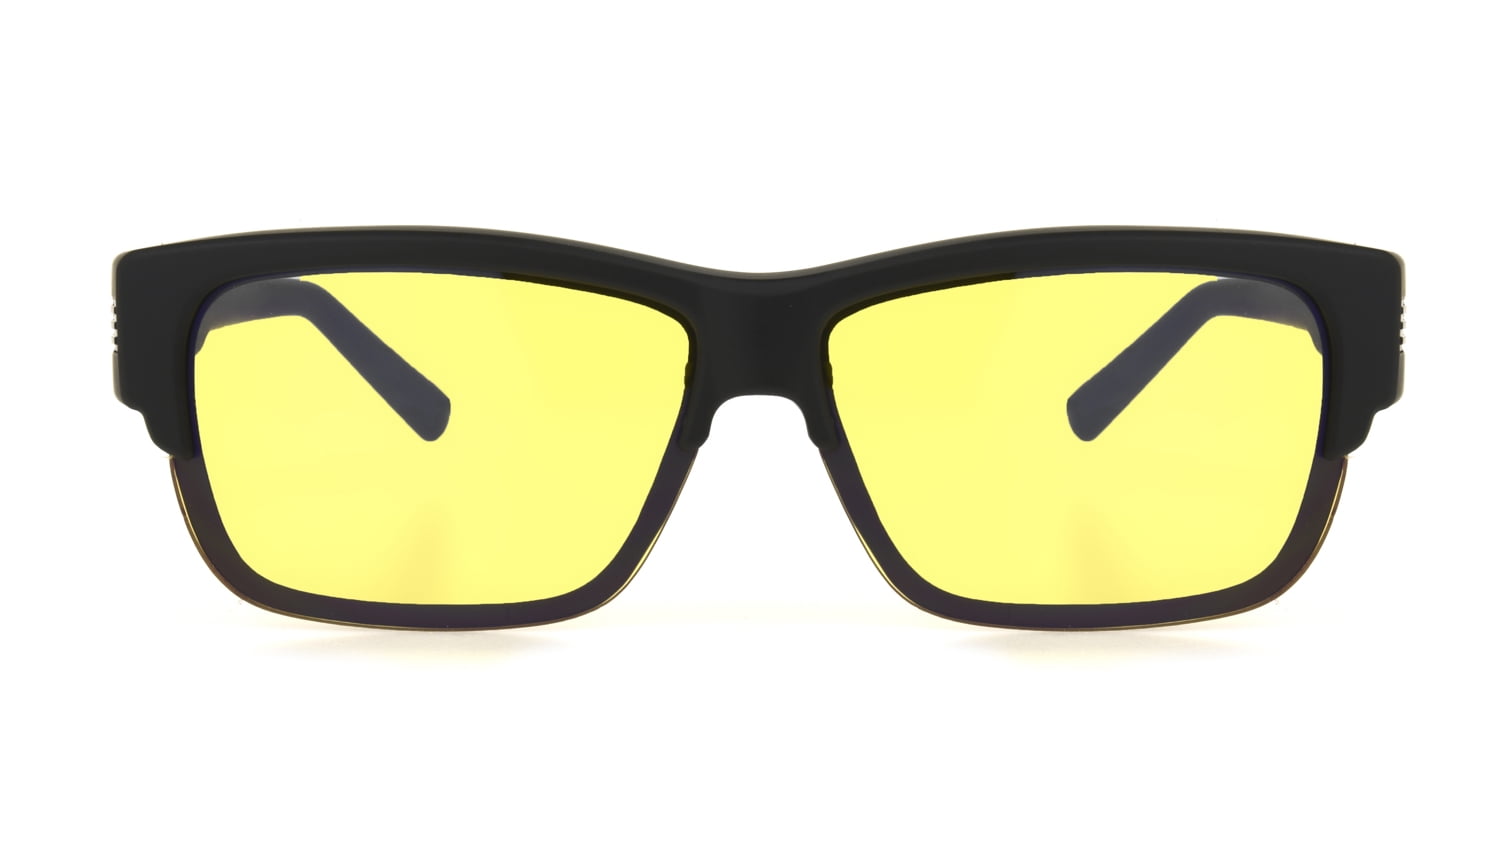 Polarized Fit Over Glasses Sunglasses 60mm Rectangular Frame 